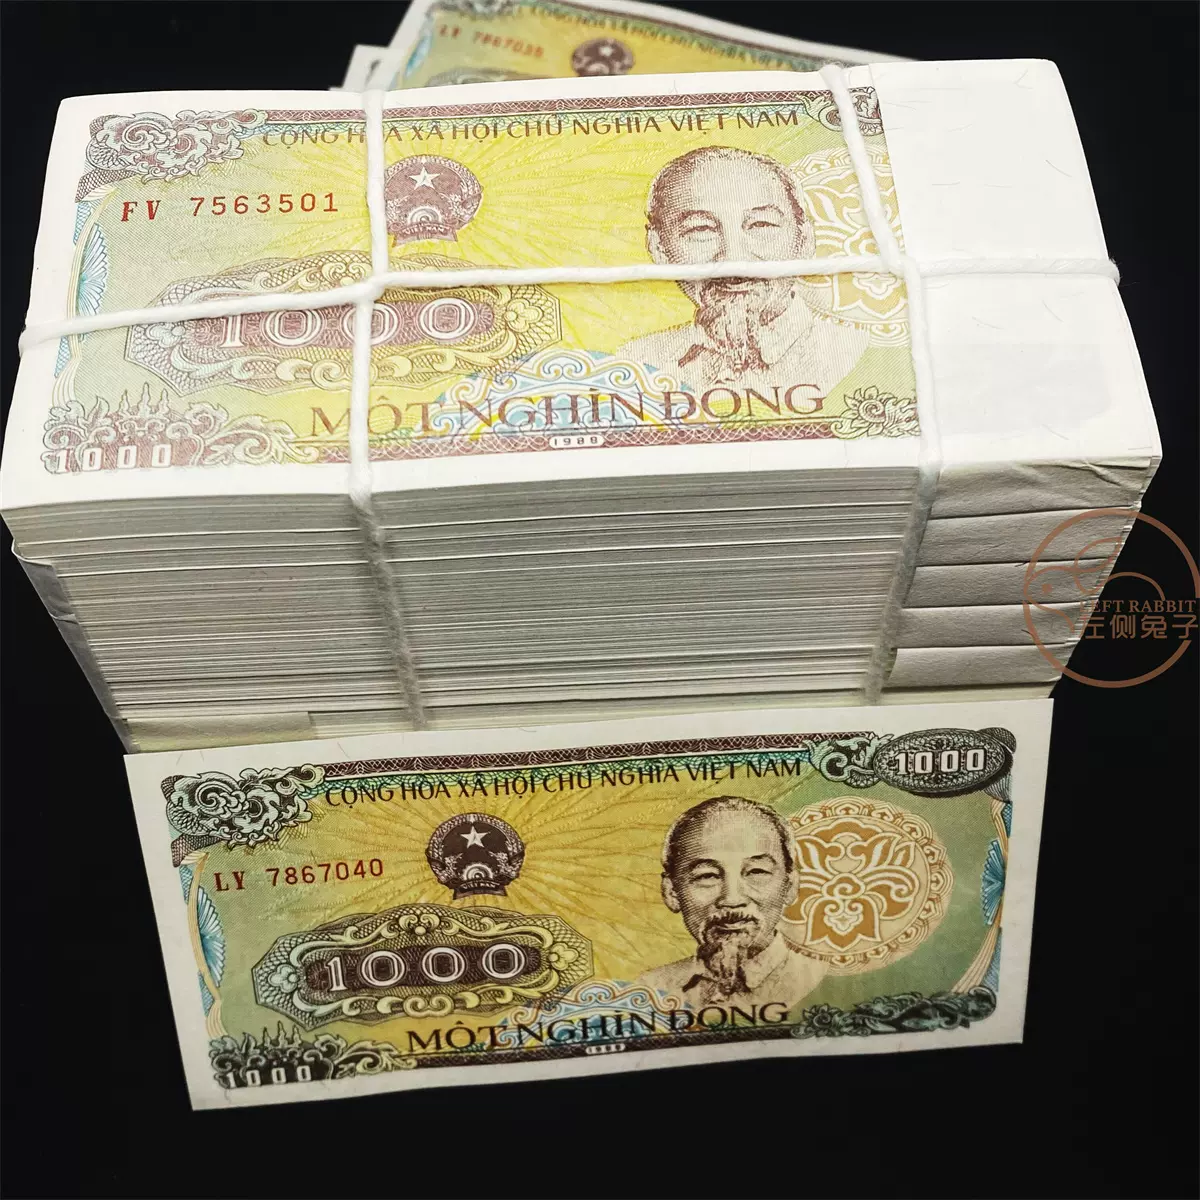 保真52張錢幣】28國52張紙幣外國錢幣已停止流通世界各國鈔票-Taobao